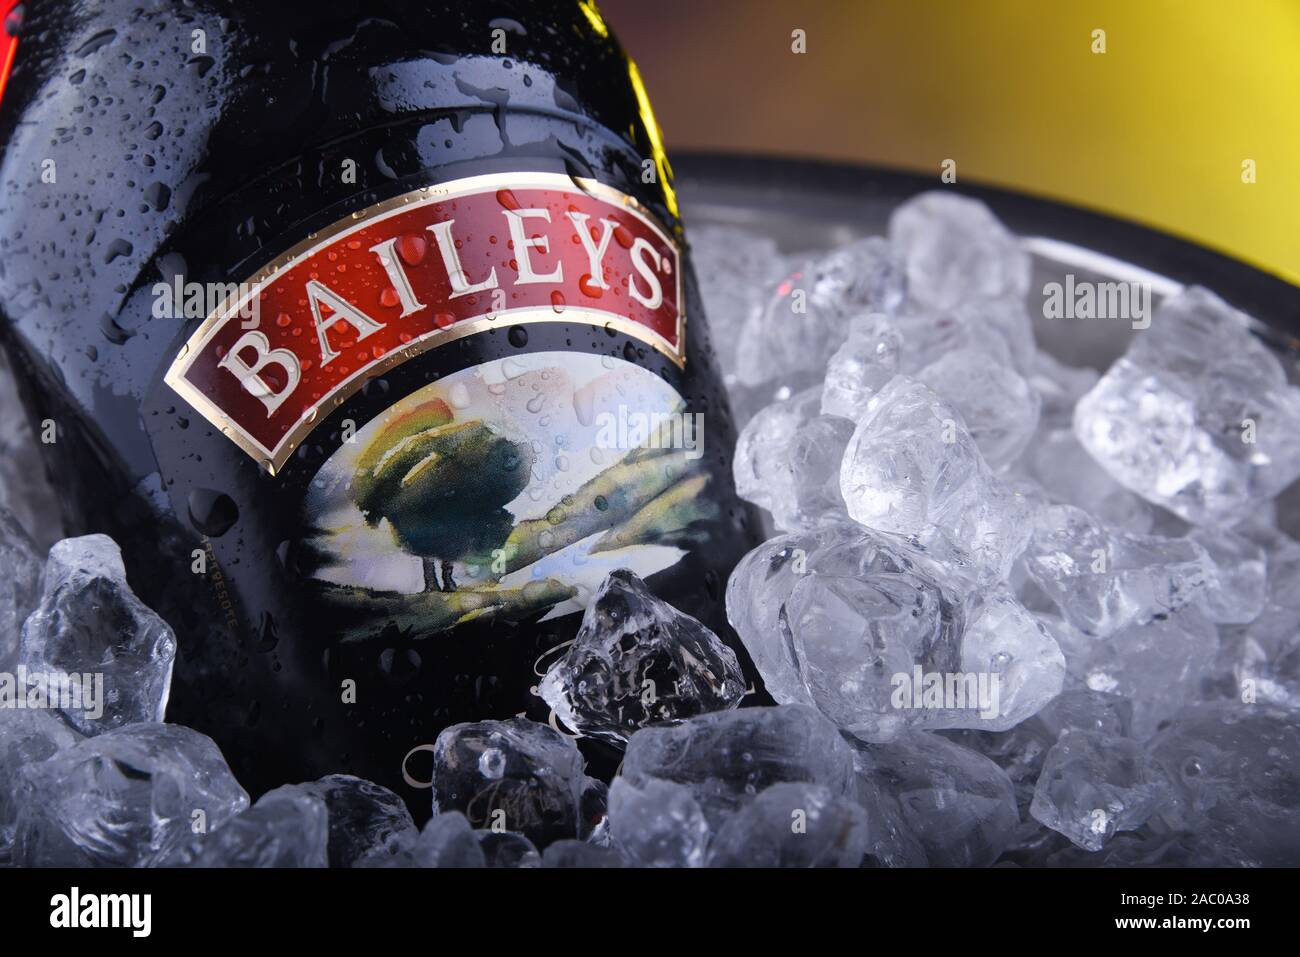 POZNAN, POL - Nov 15, 2019: Botella de Baileys crema irlandesa, Irish whiskey y licor de crema, hecha por Gilbeys de Irlanda. Actualmente la marca owne Foto de stock